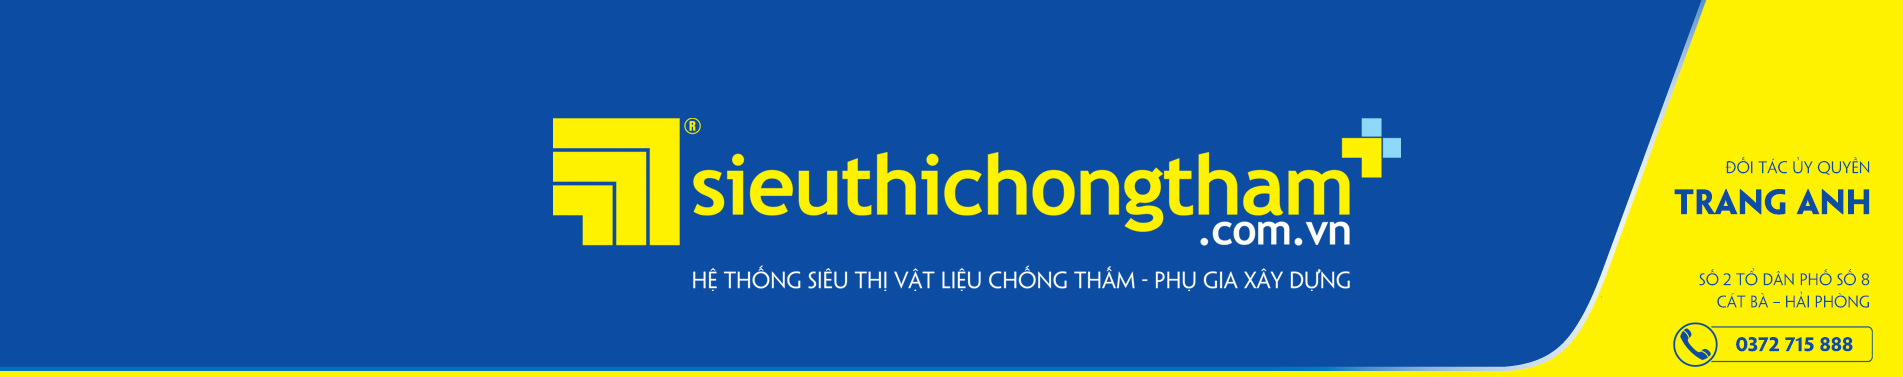 Trang Anh Banner 2